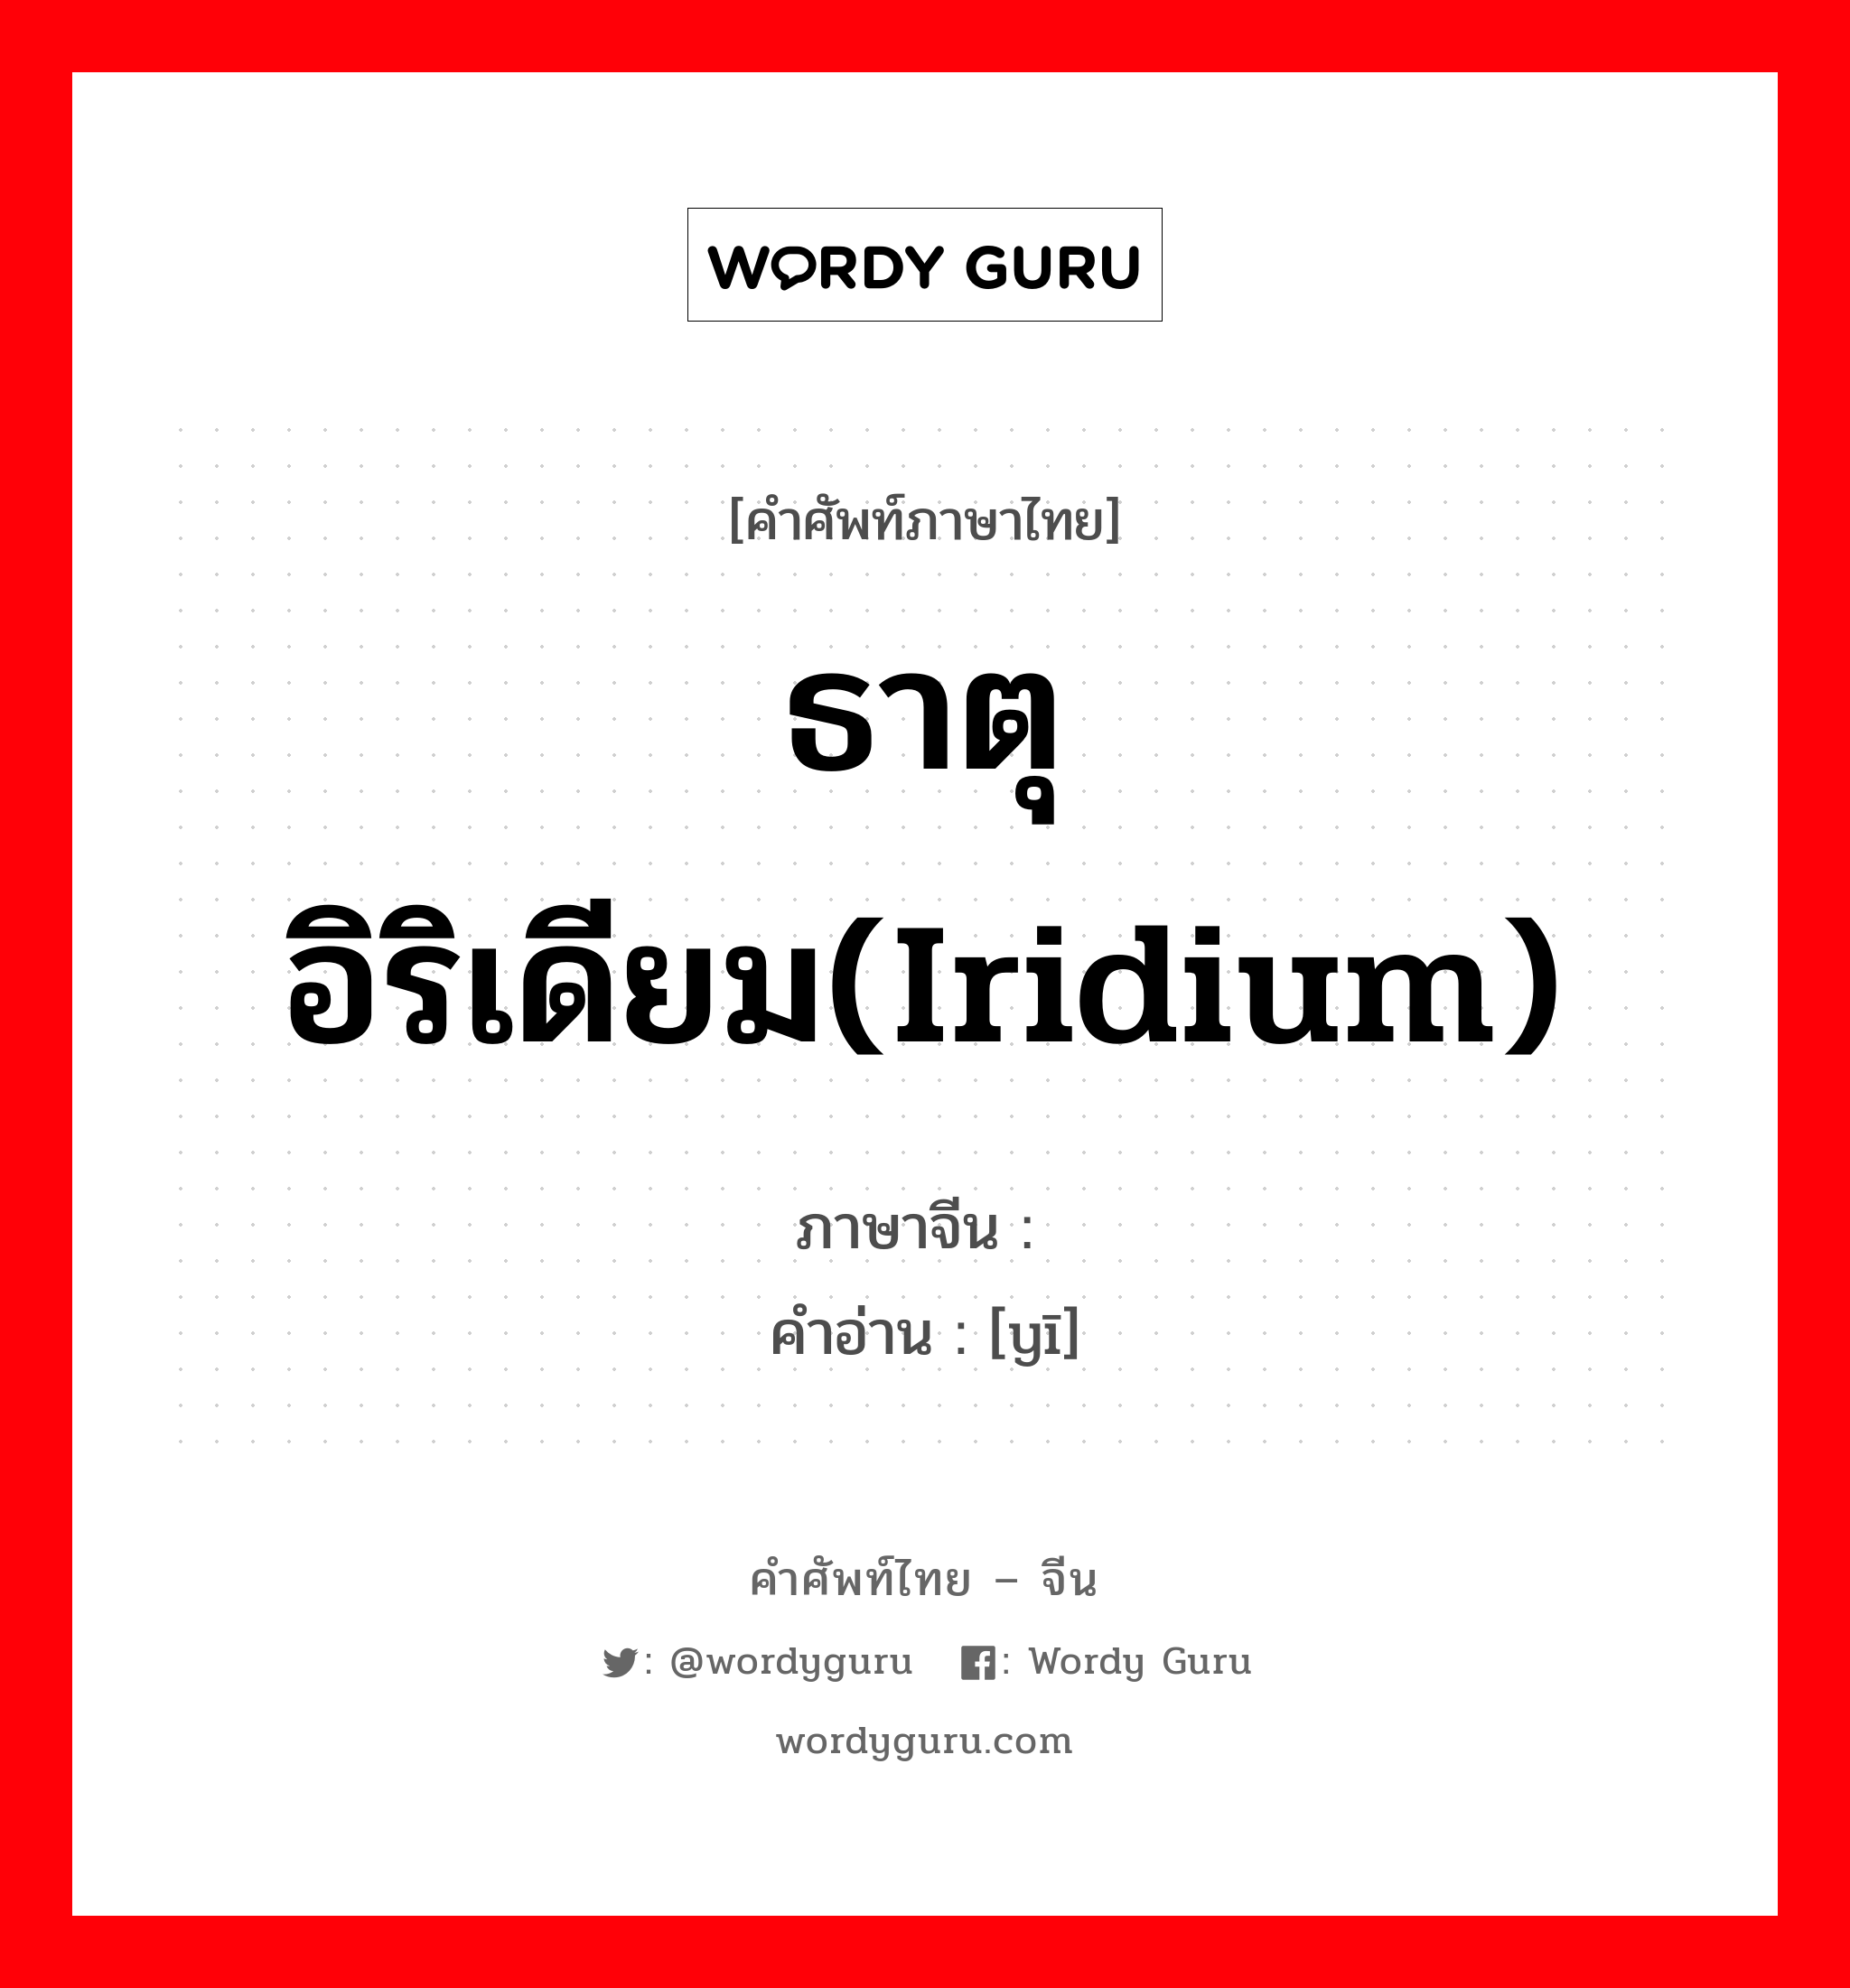 ธาตุอิริเดียม(Iridium) ภาษาจีนคืออะไร, คำศัพท์ภาษาไทย - จีน ธาตุอิริเดียม(Iridium) ภาษาจีน 铱 คำอ่าน [yī]